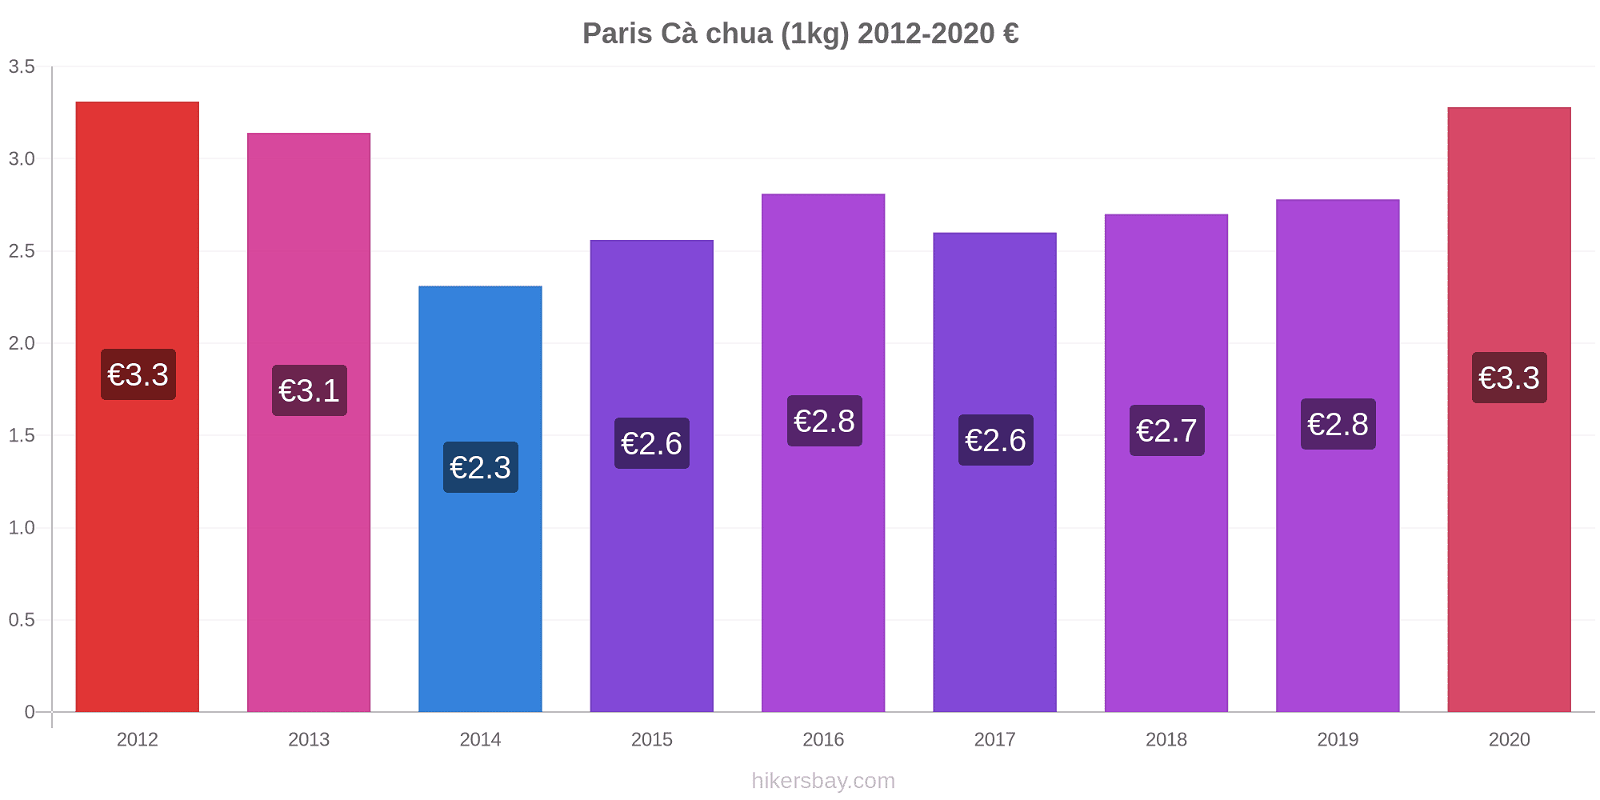 Paris thay đổi giá Cà chua (1kg) hikersbay.com